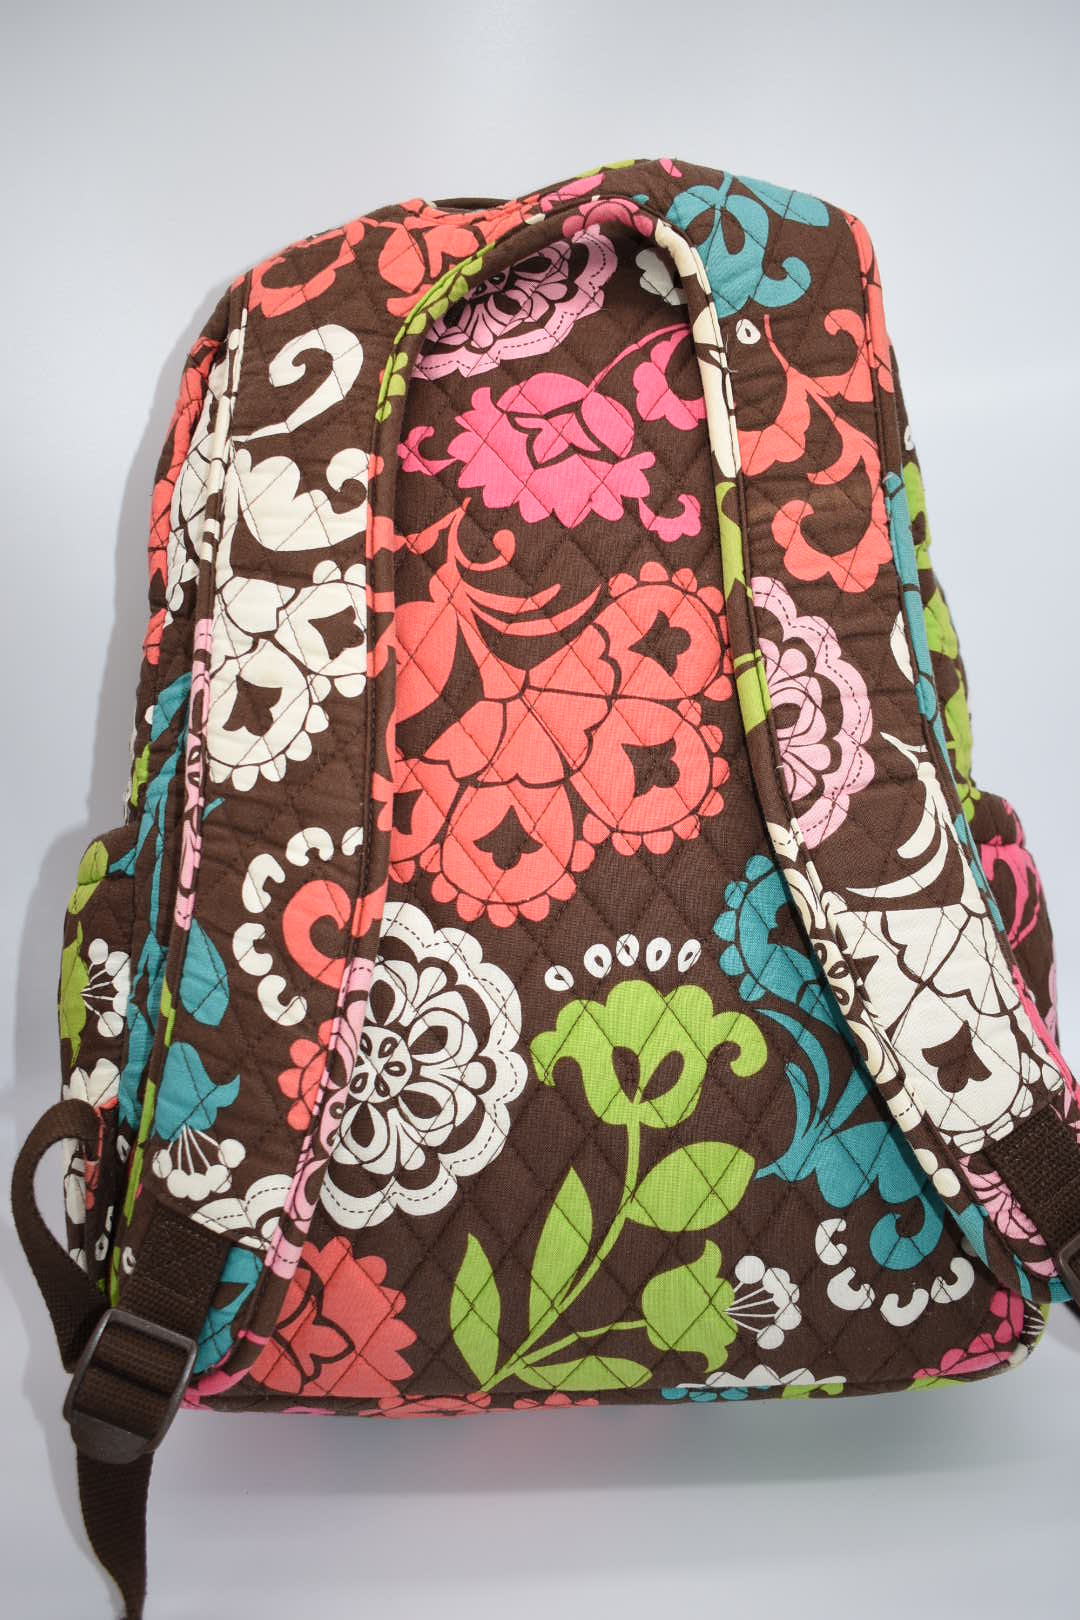 Vera Bradley Backpack Baby Bag in Lola Pattern – Pink Lemon Standard